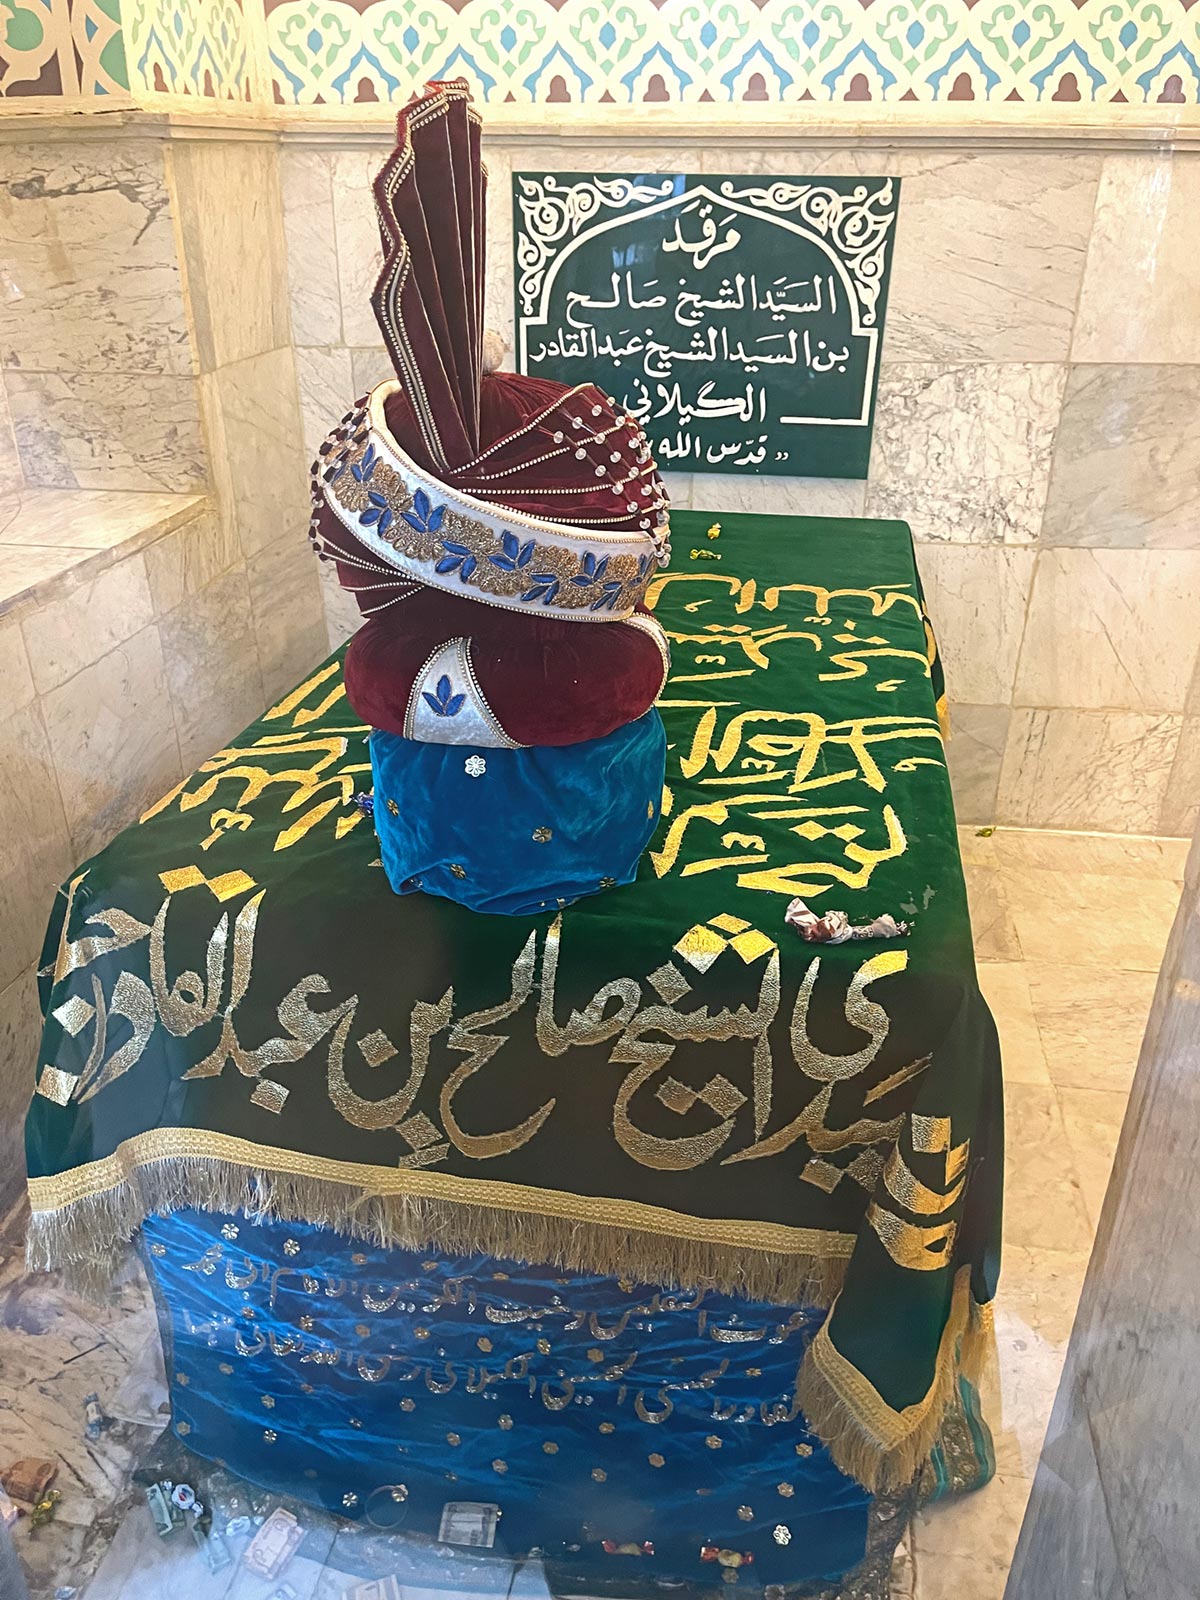 Tomba di Sheikh Salih, figlio di Abdul Qadir Gilani, presso il Mausoleo di Abdul Qadir Gilani, Baghdad